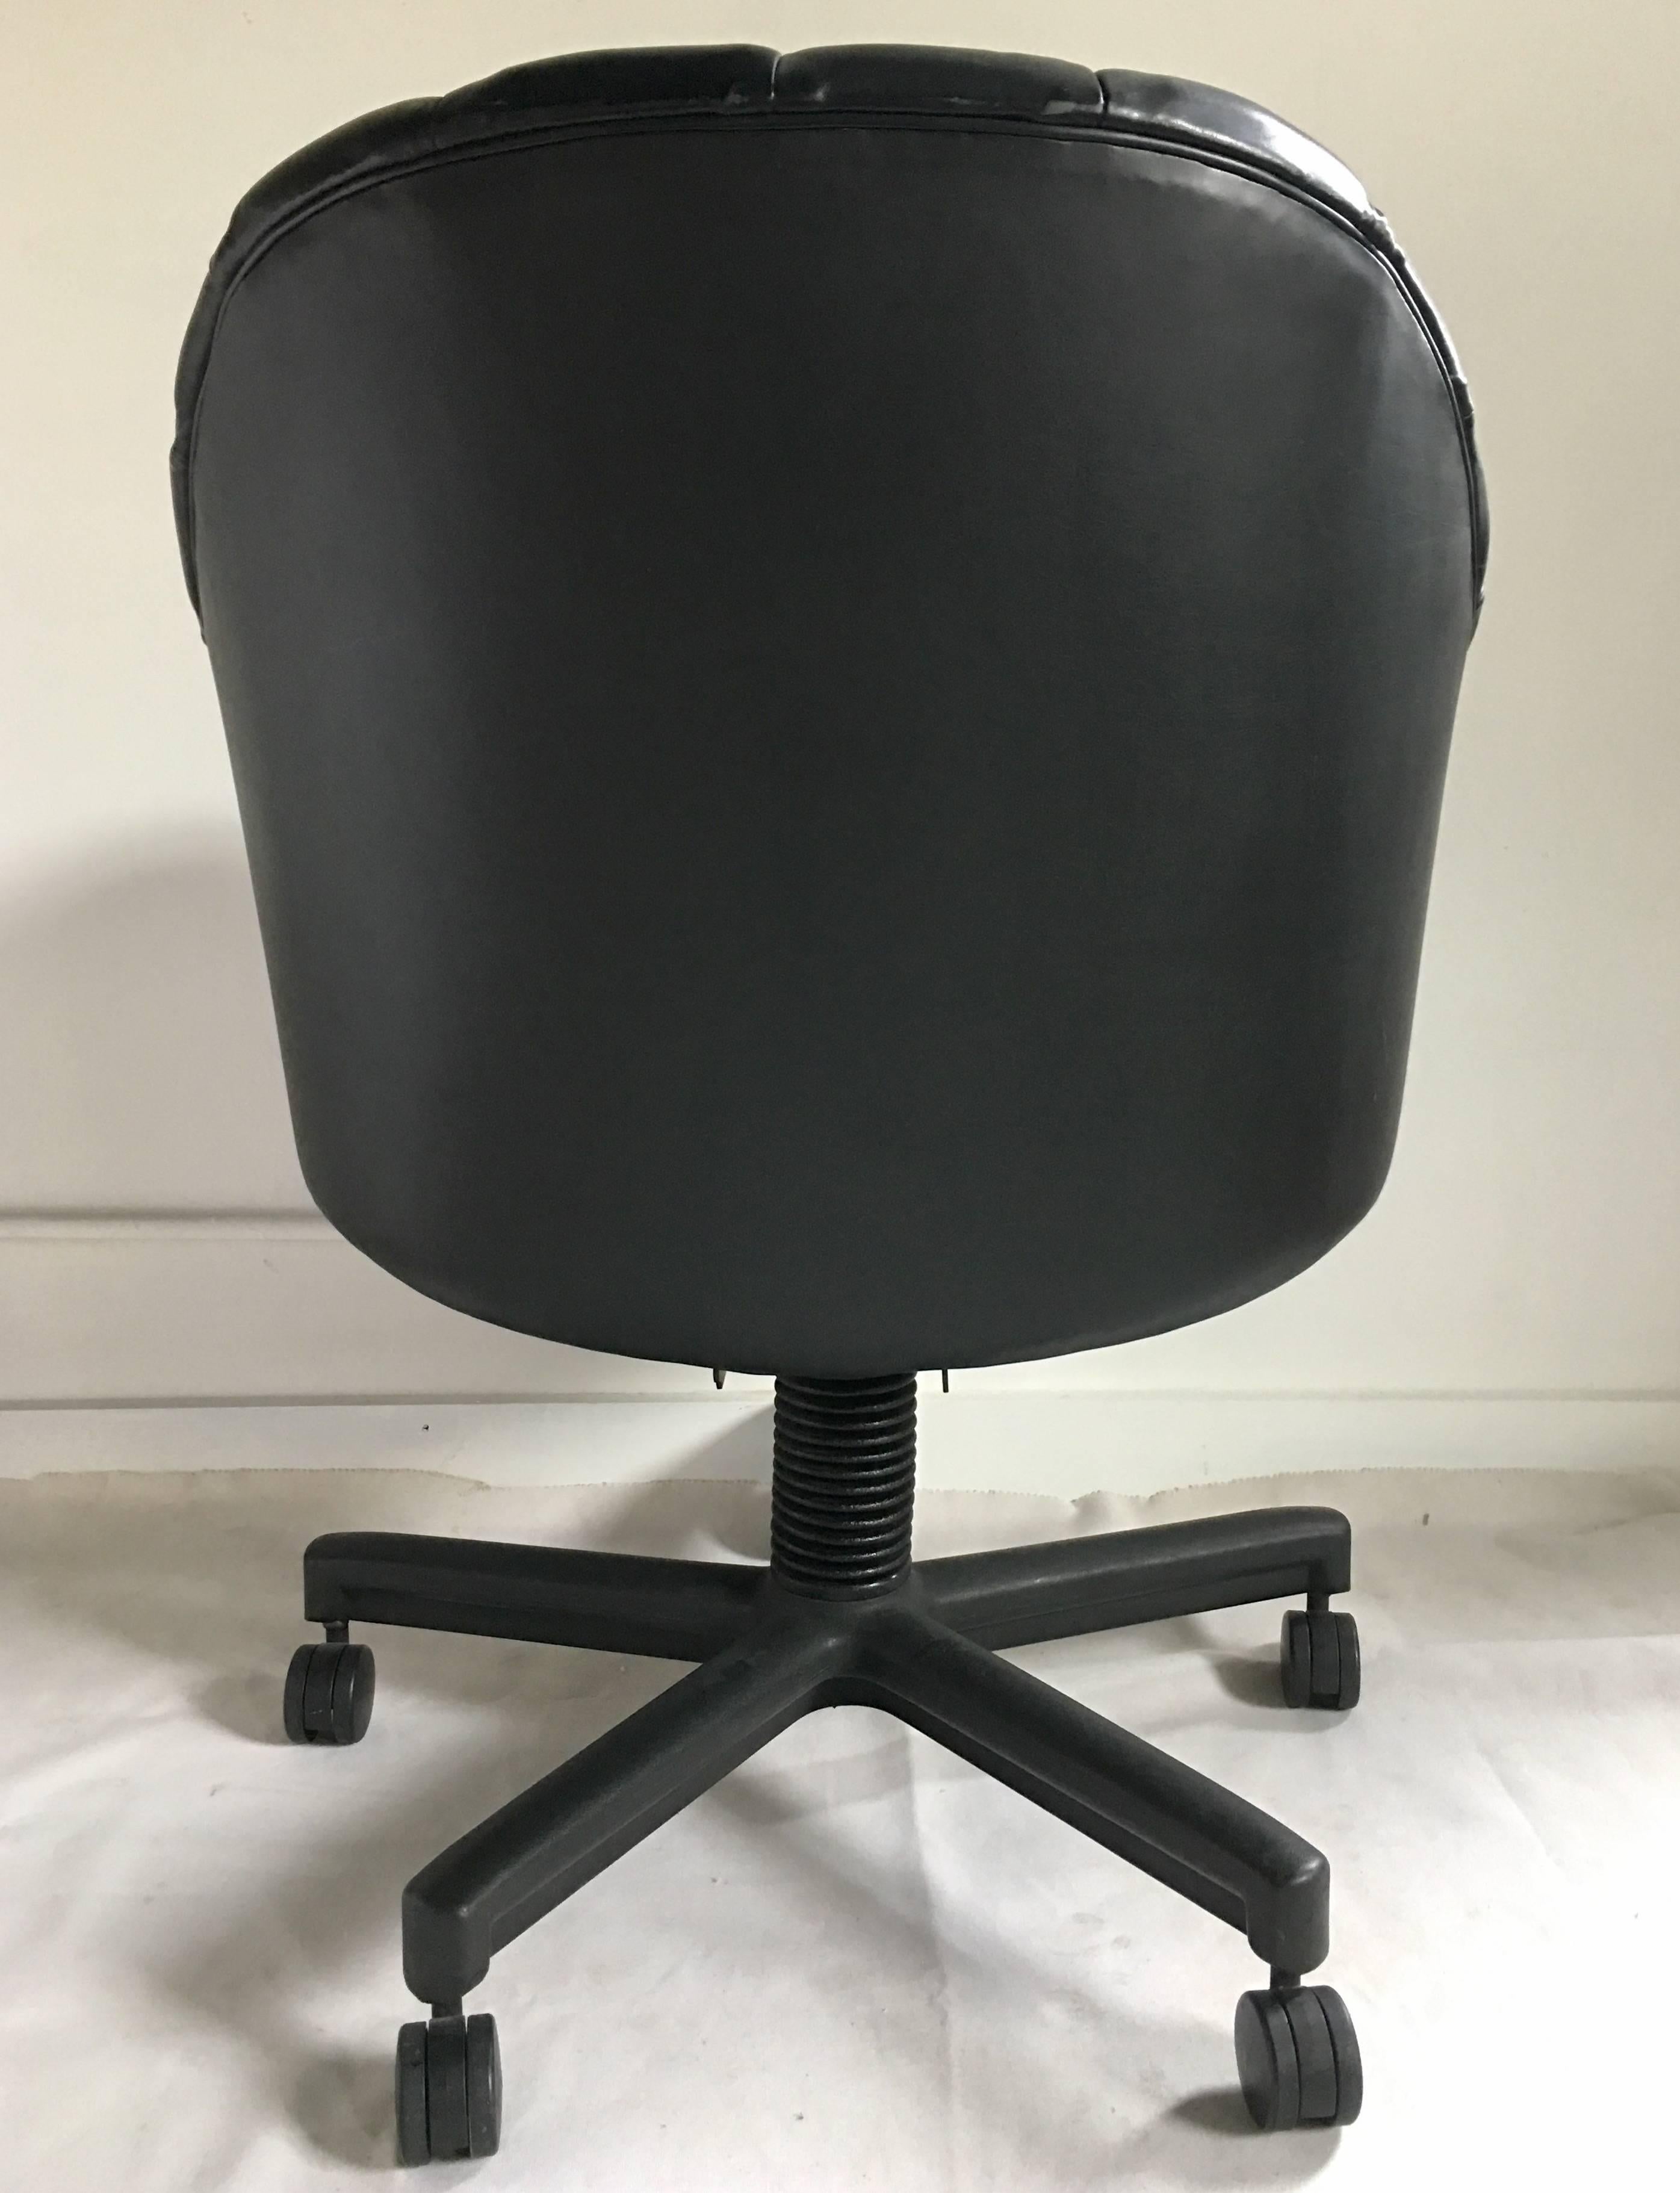 Chaise de bureau à roulettes en cuir noir de style Hollywood Regency par Jack Cartwright. Ce design moderne et sculptural se caractérise par un dossier en éventail incurvé et cannelé et par cinq pieds à roulettes. L'inclinaison du fauteuil peut être